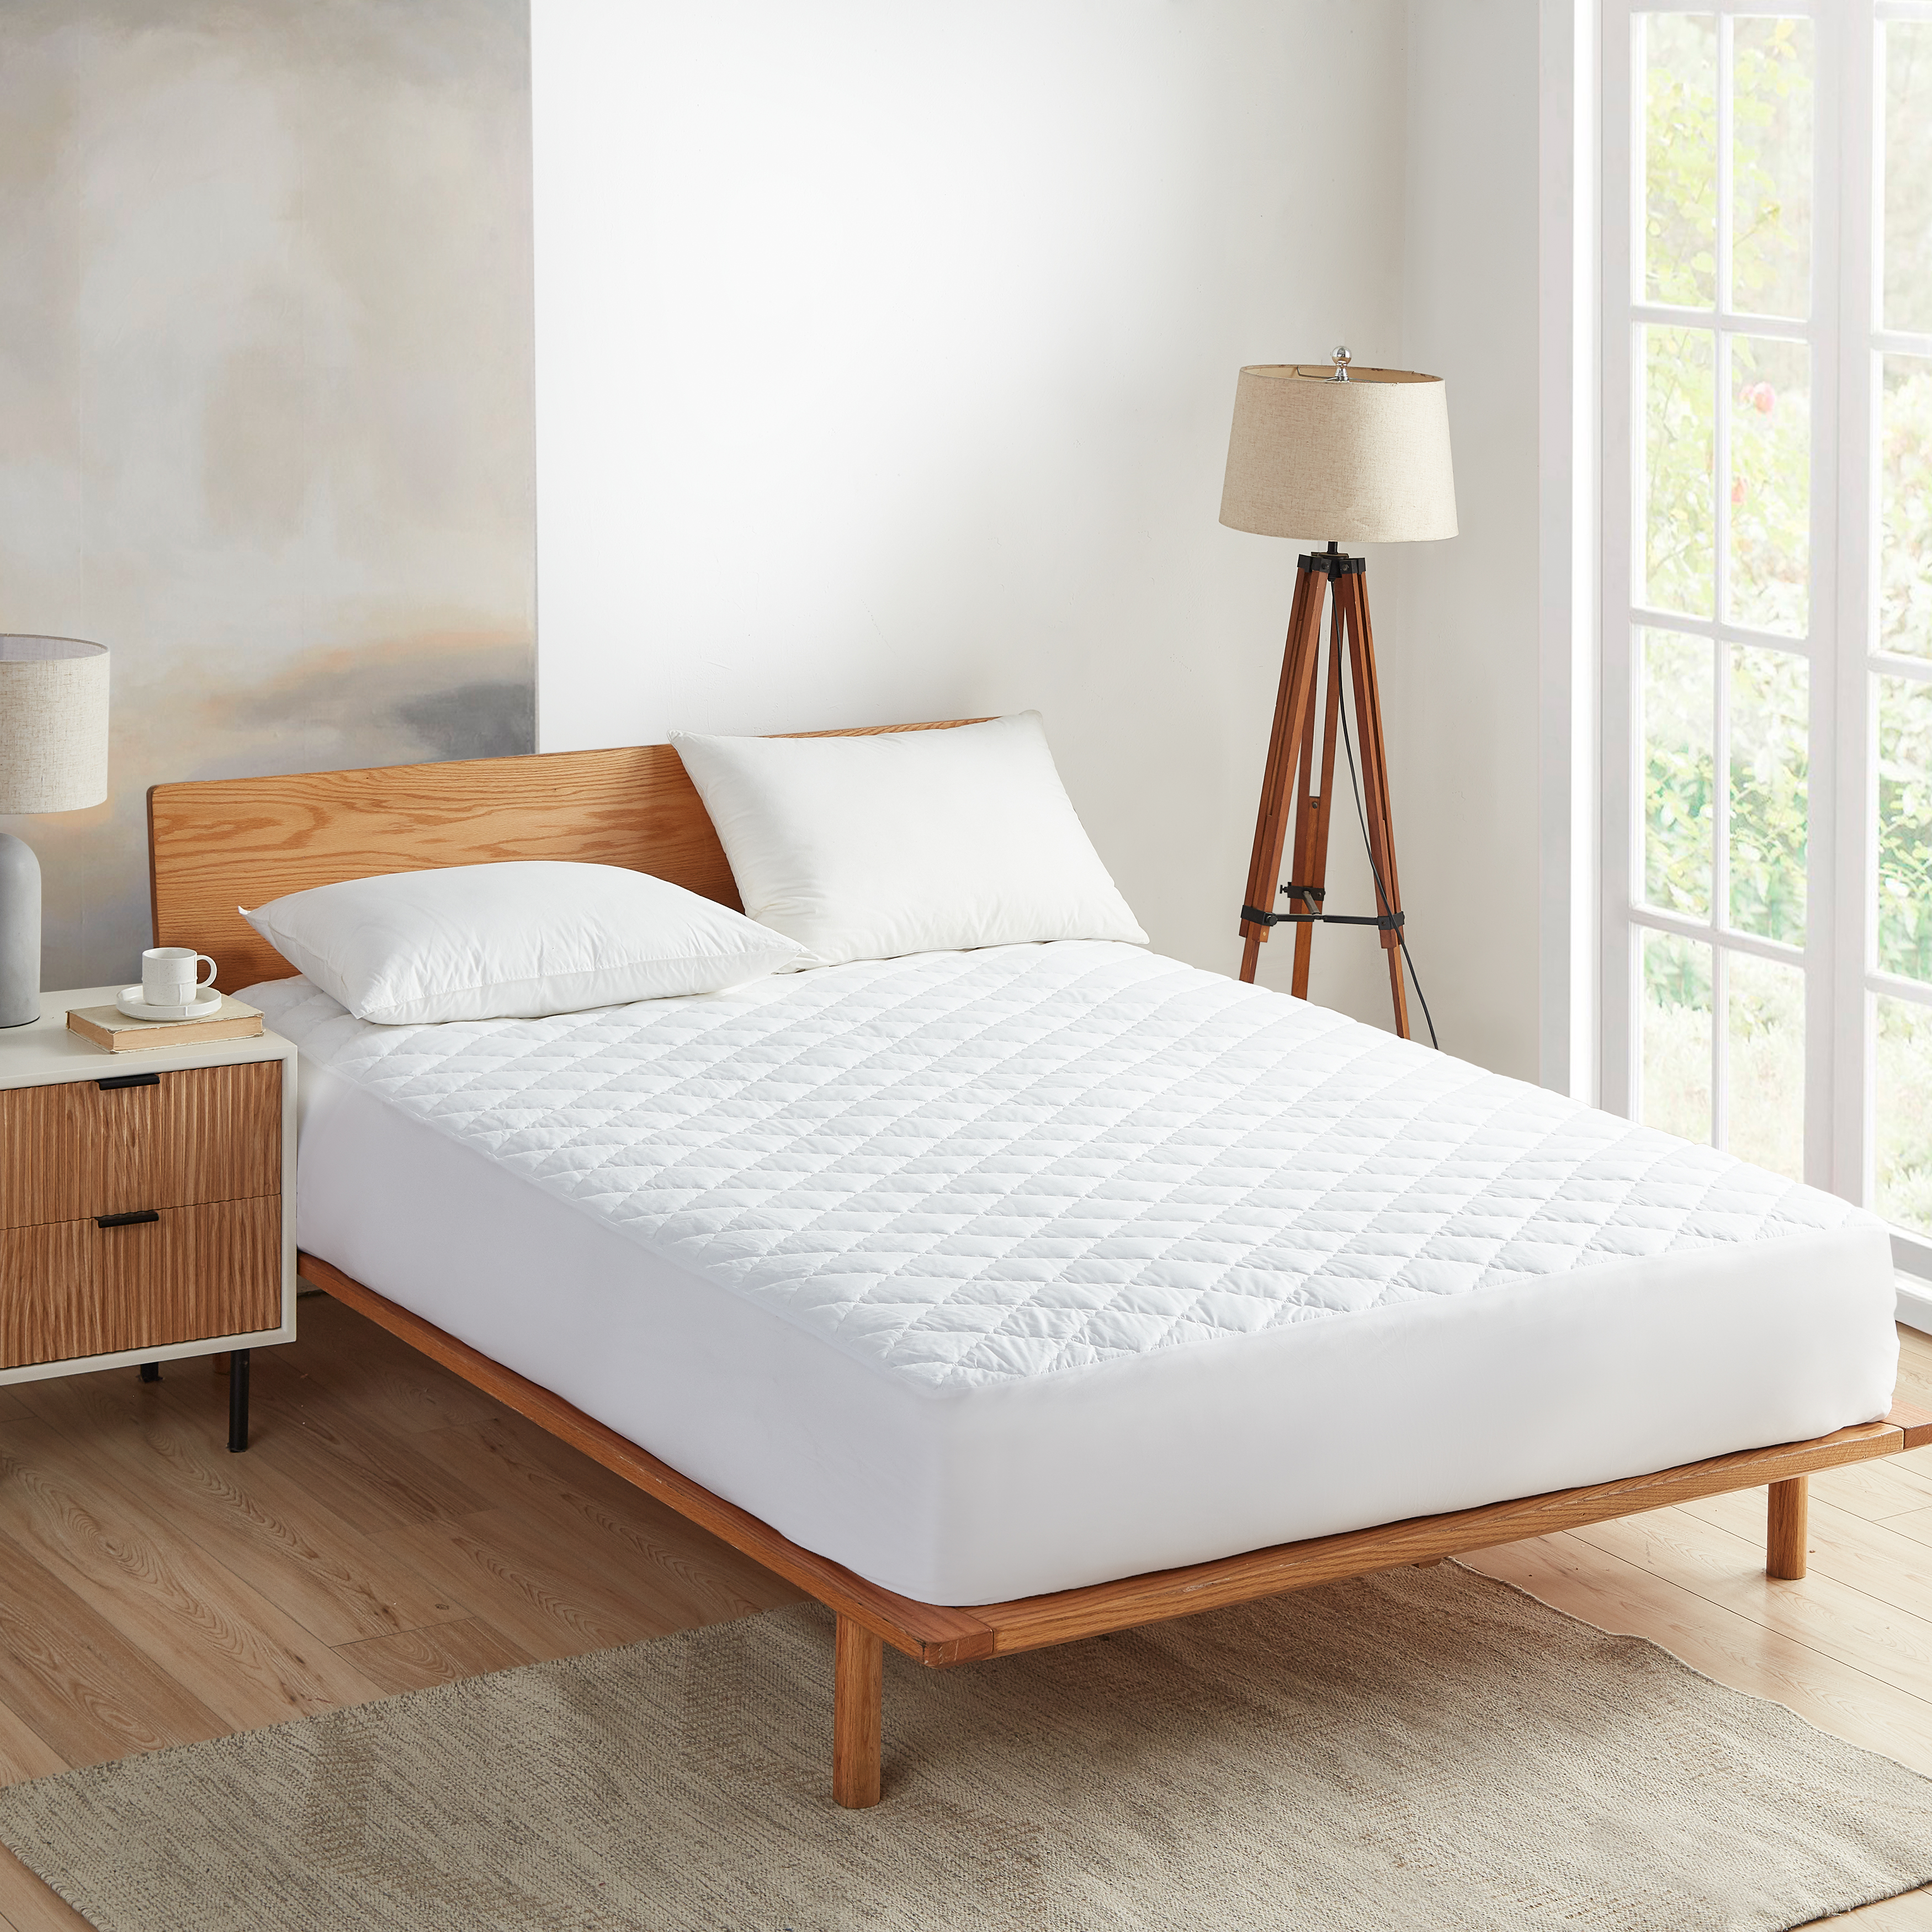 Bed bugs: Do mattress encasements help?